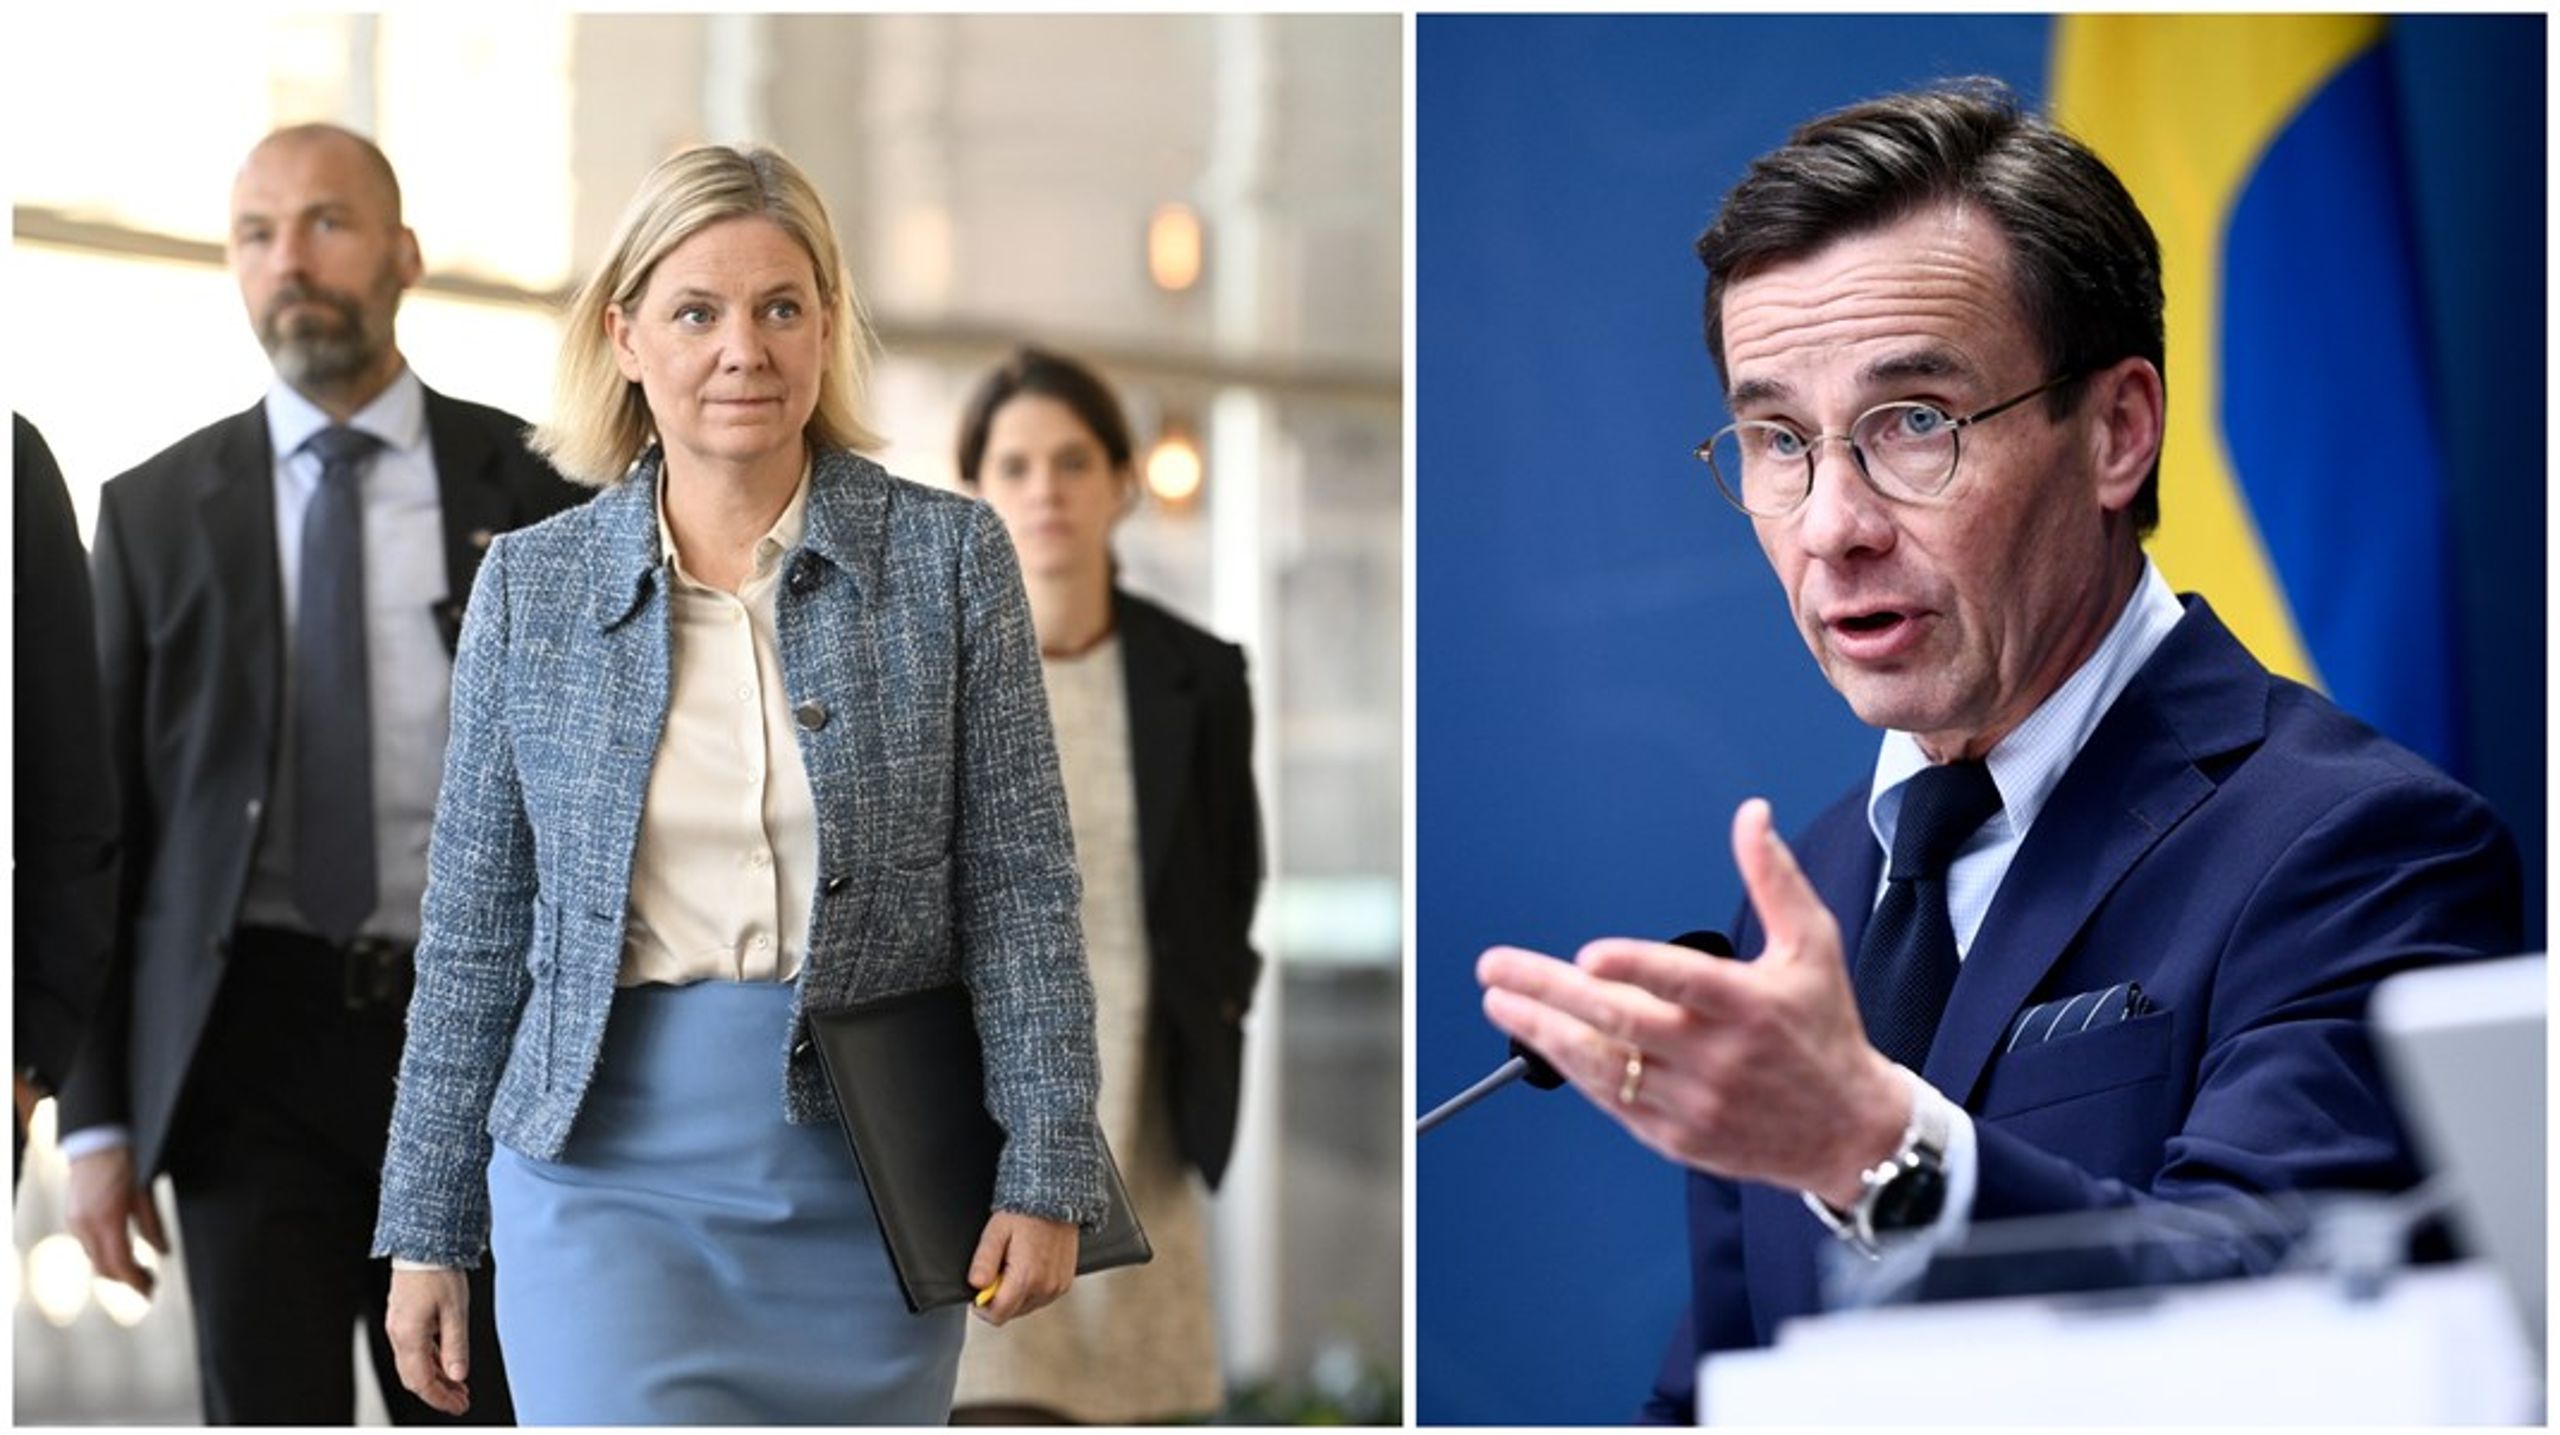 Den senaste partisympatiundersökningen visade på ett uppsving för Magdalena Andersson sedan valet.&nbsp;Samtidigt tappar Kristersson och hans regeringsunderlag.